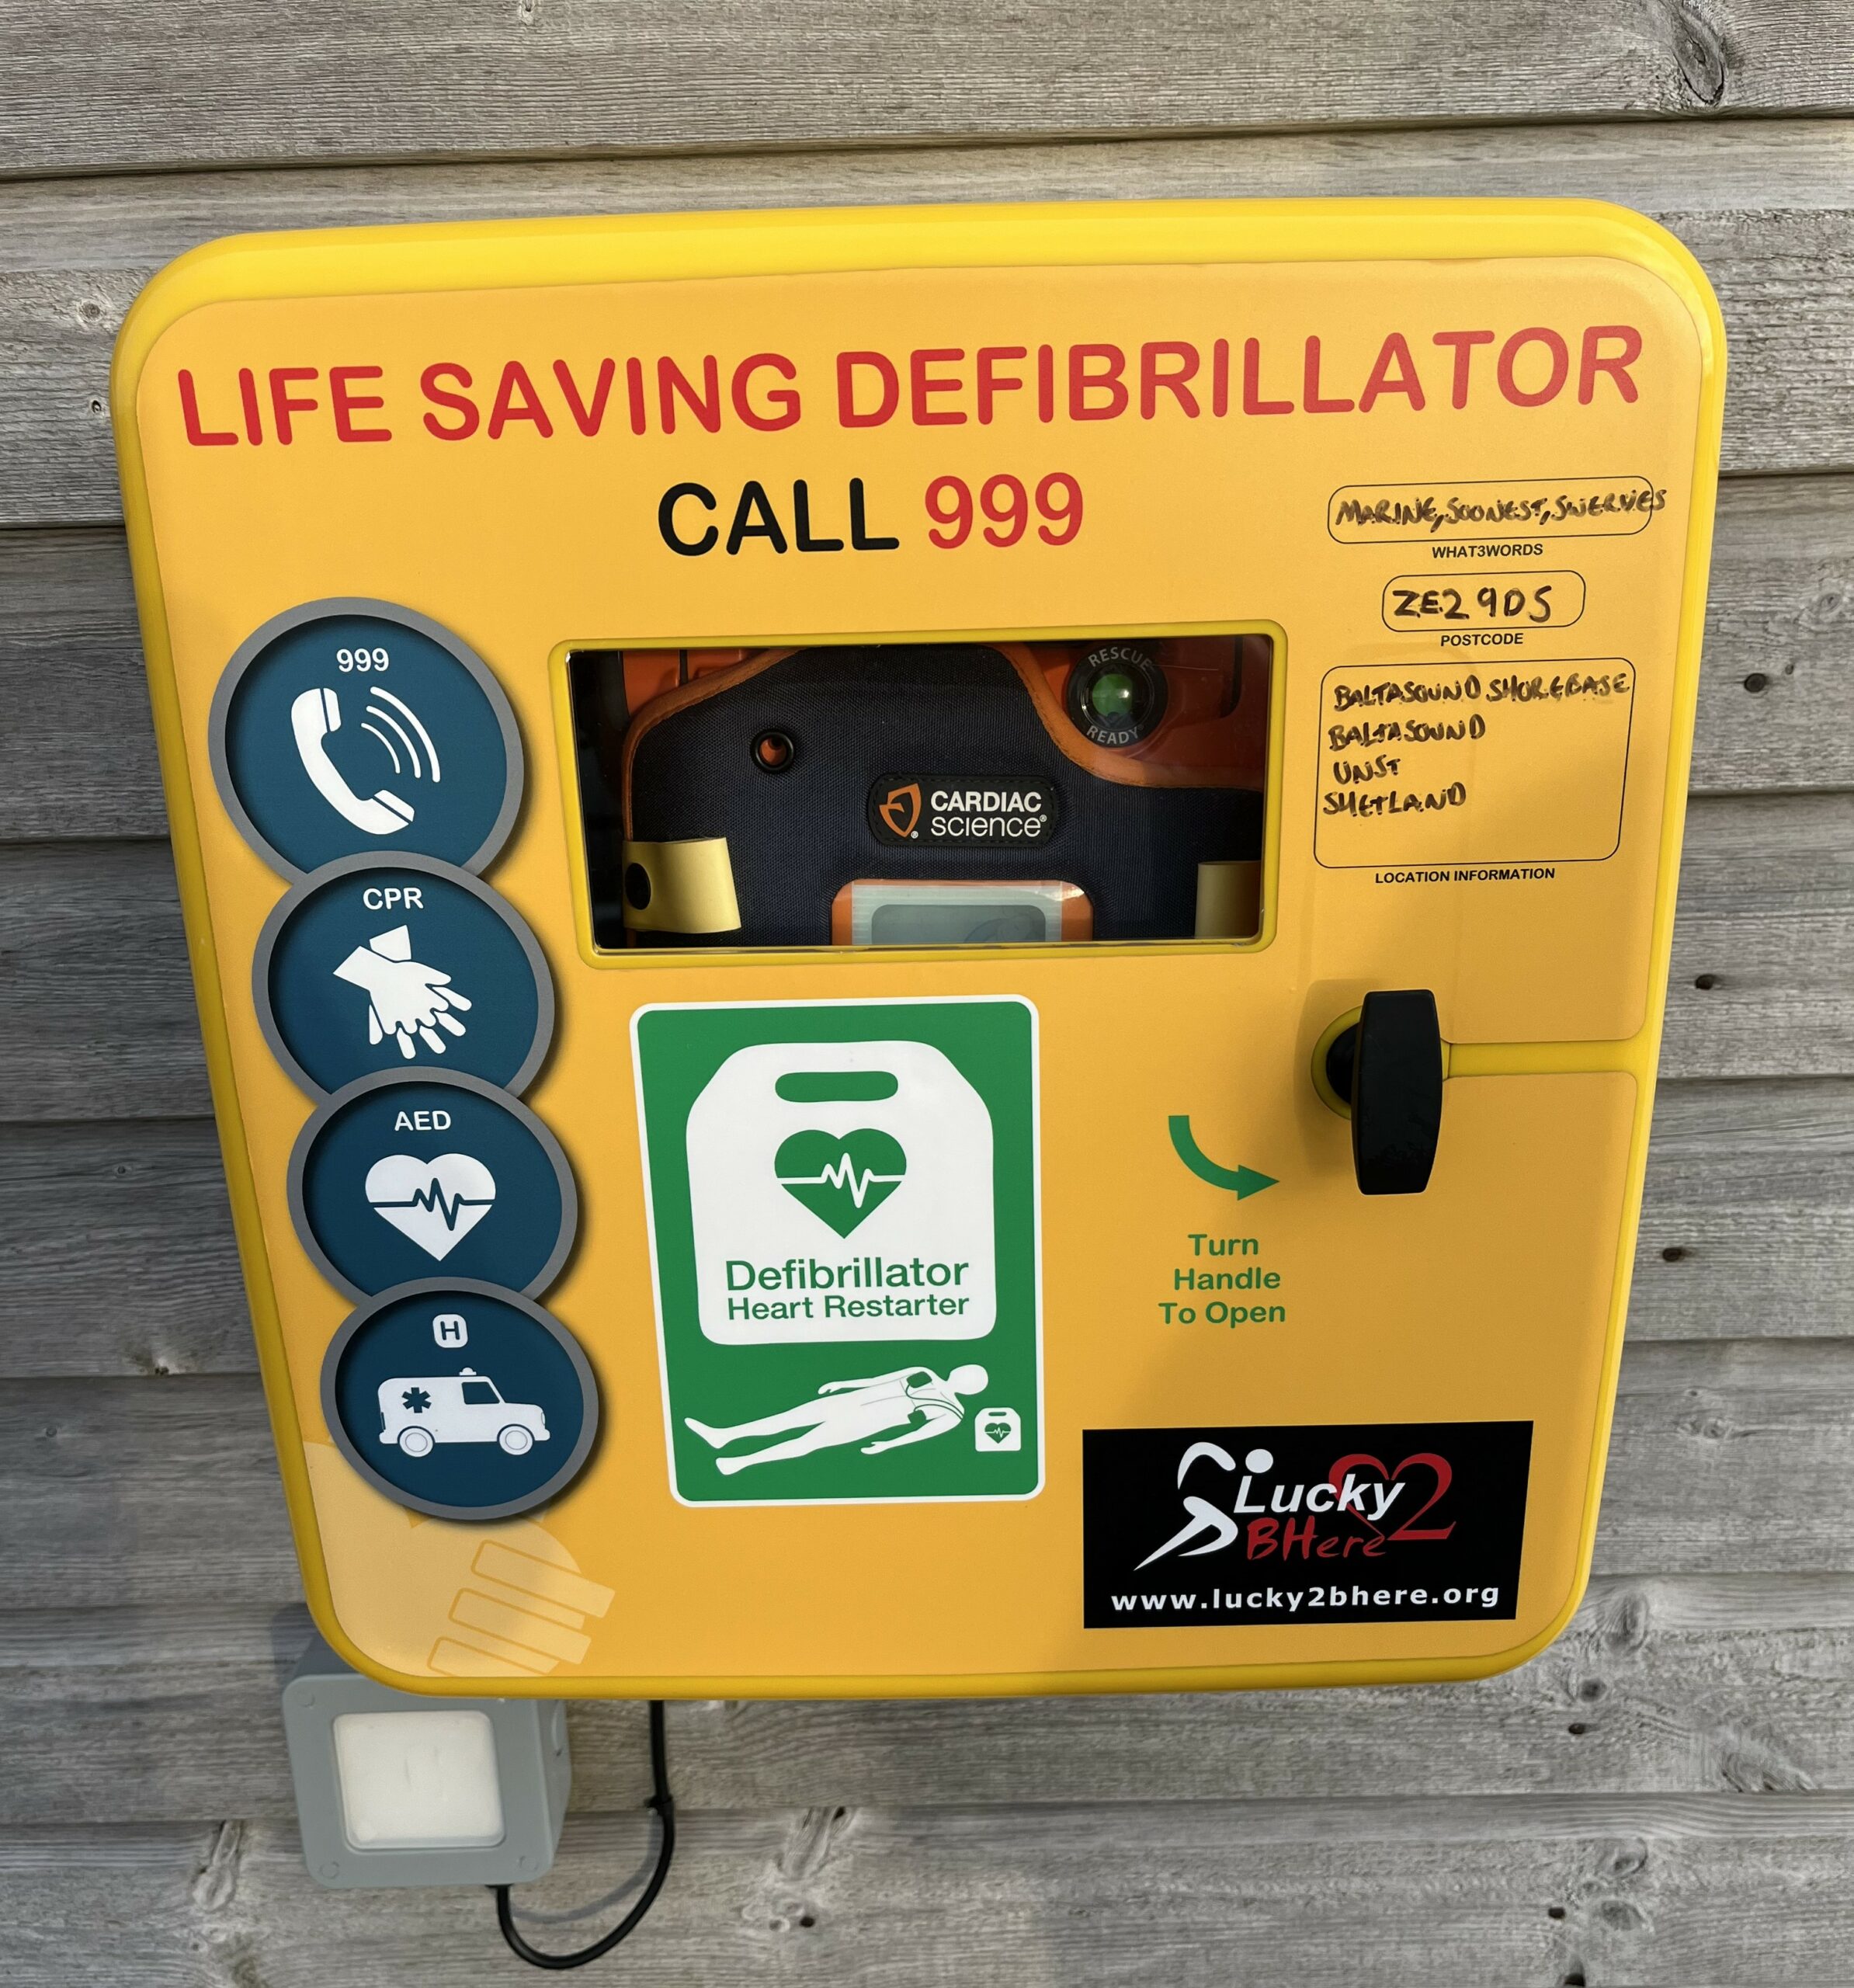 Defibrillator rollout